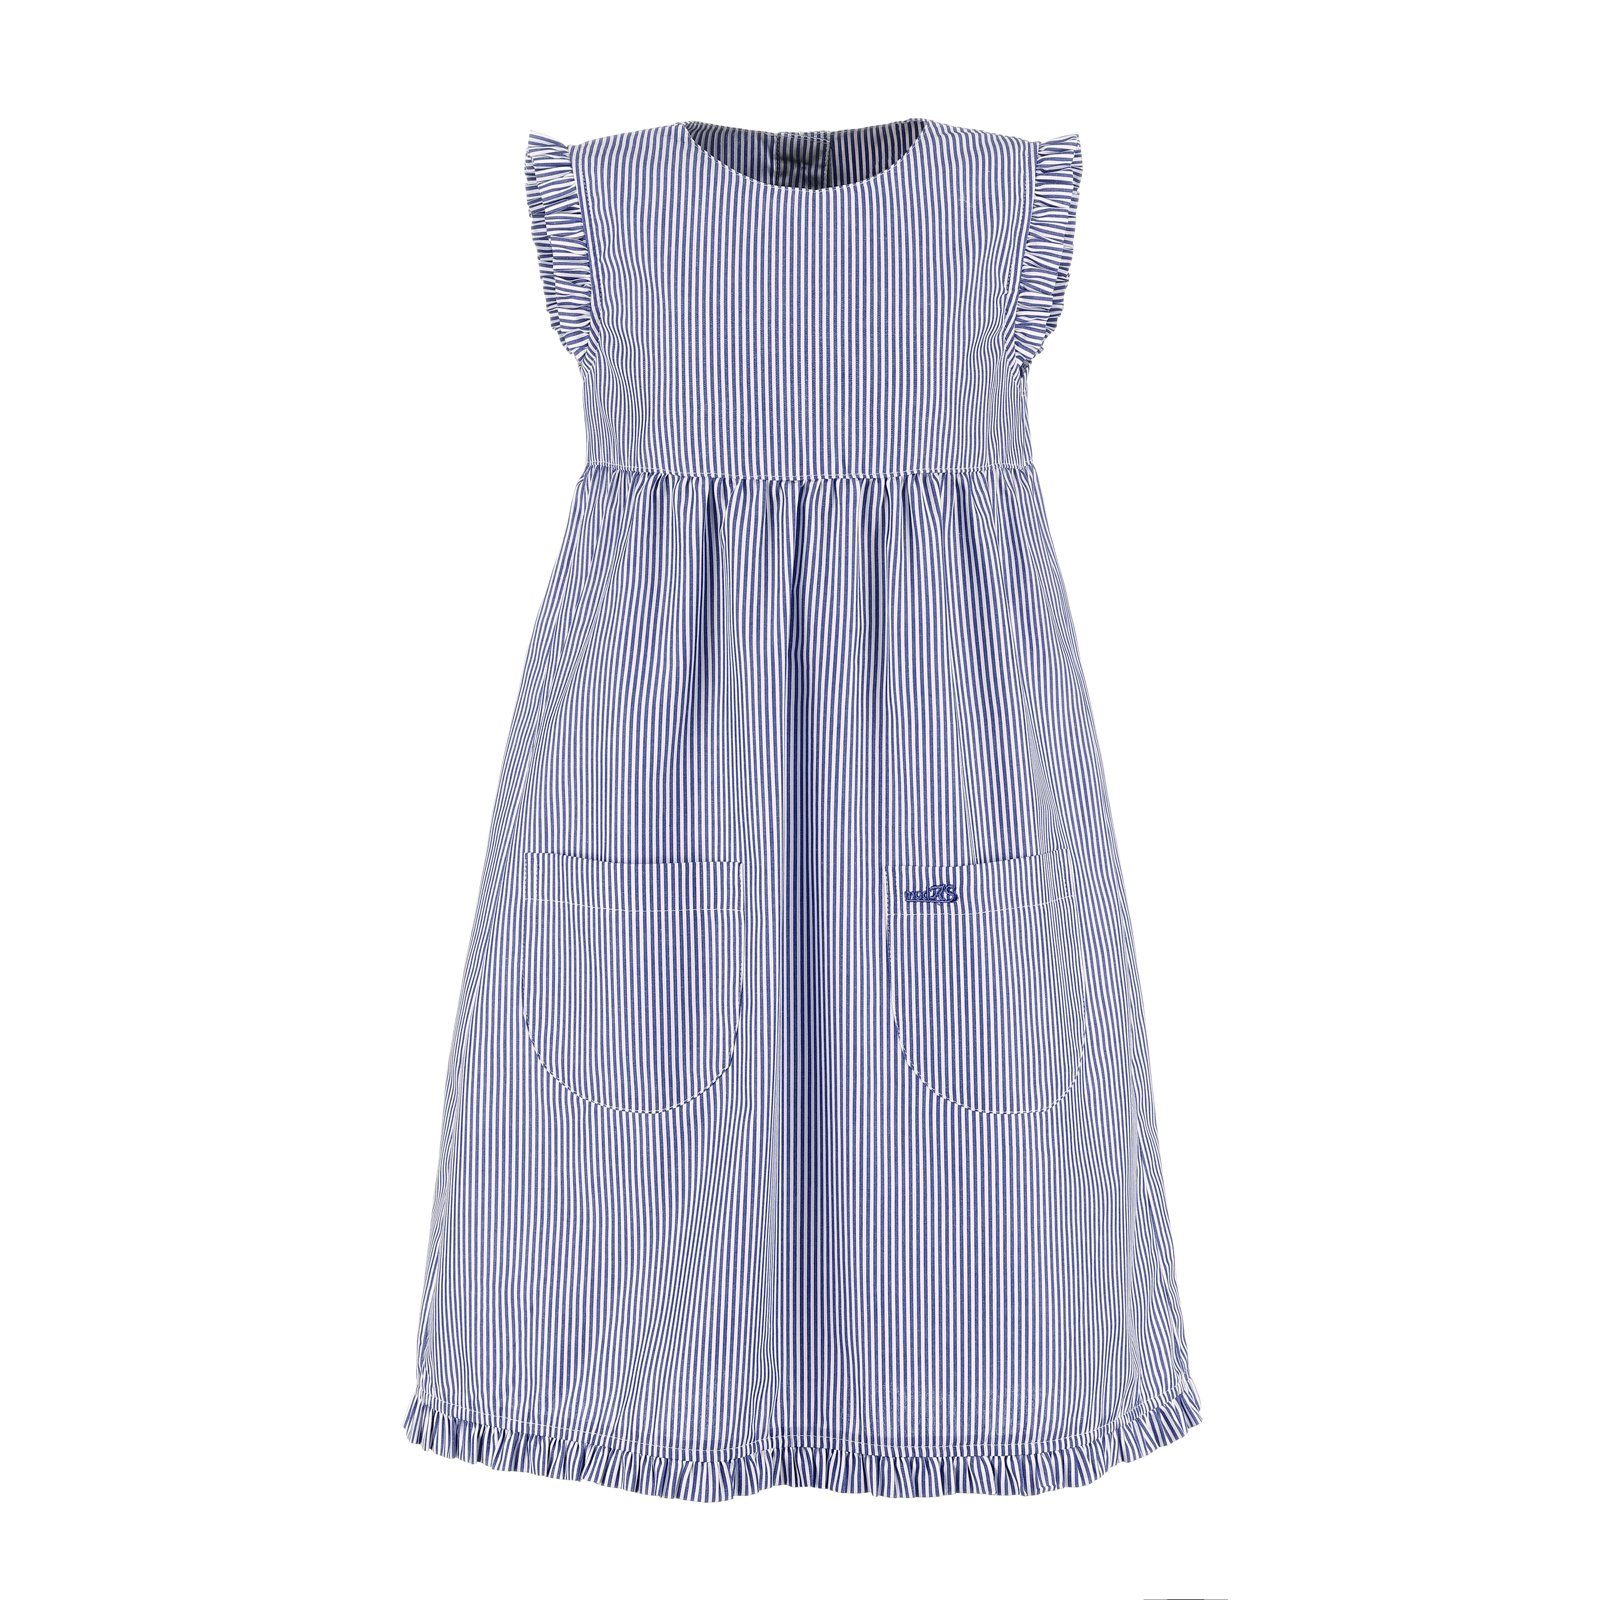 mit mit / (054) - modAS Rüschen gestreift marine Kinder Mädchenkleid gestreift Kleid Sommerkleid weiß Streifen